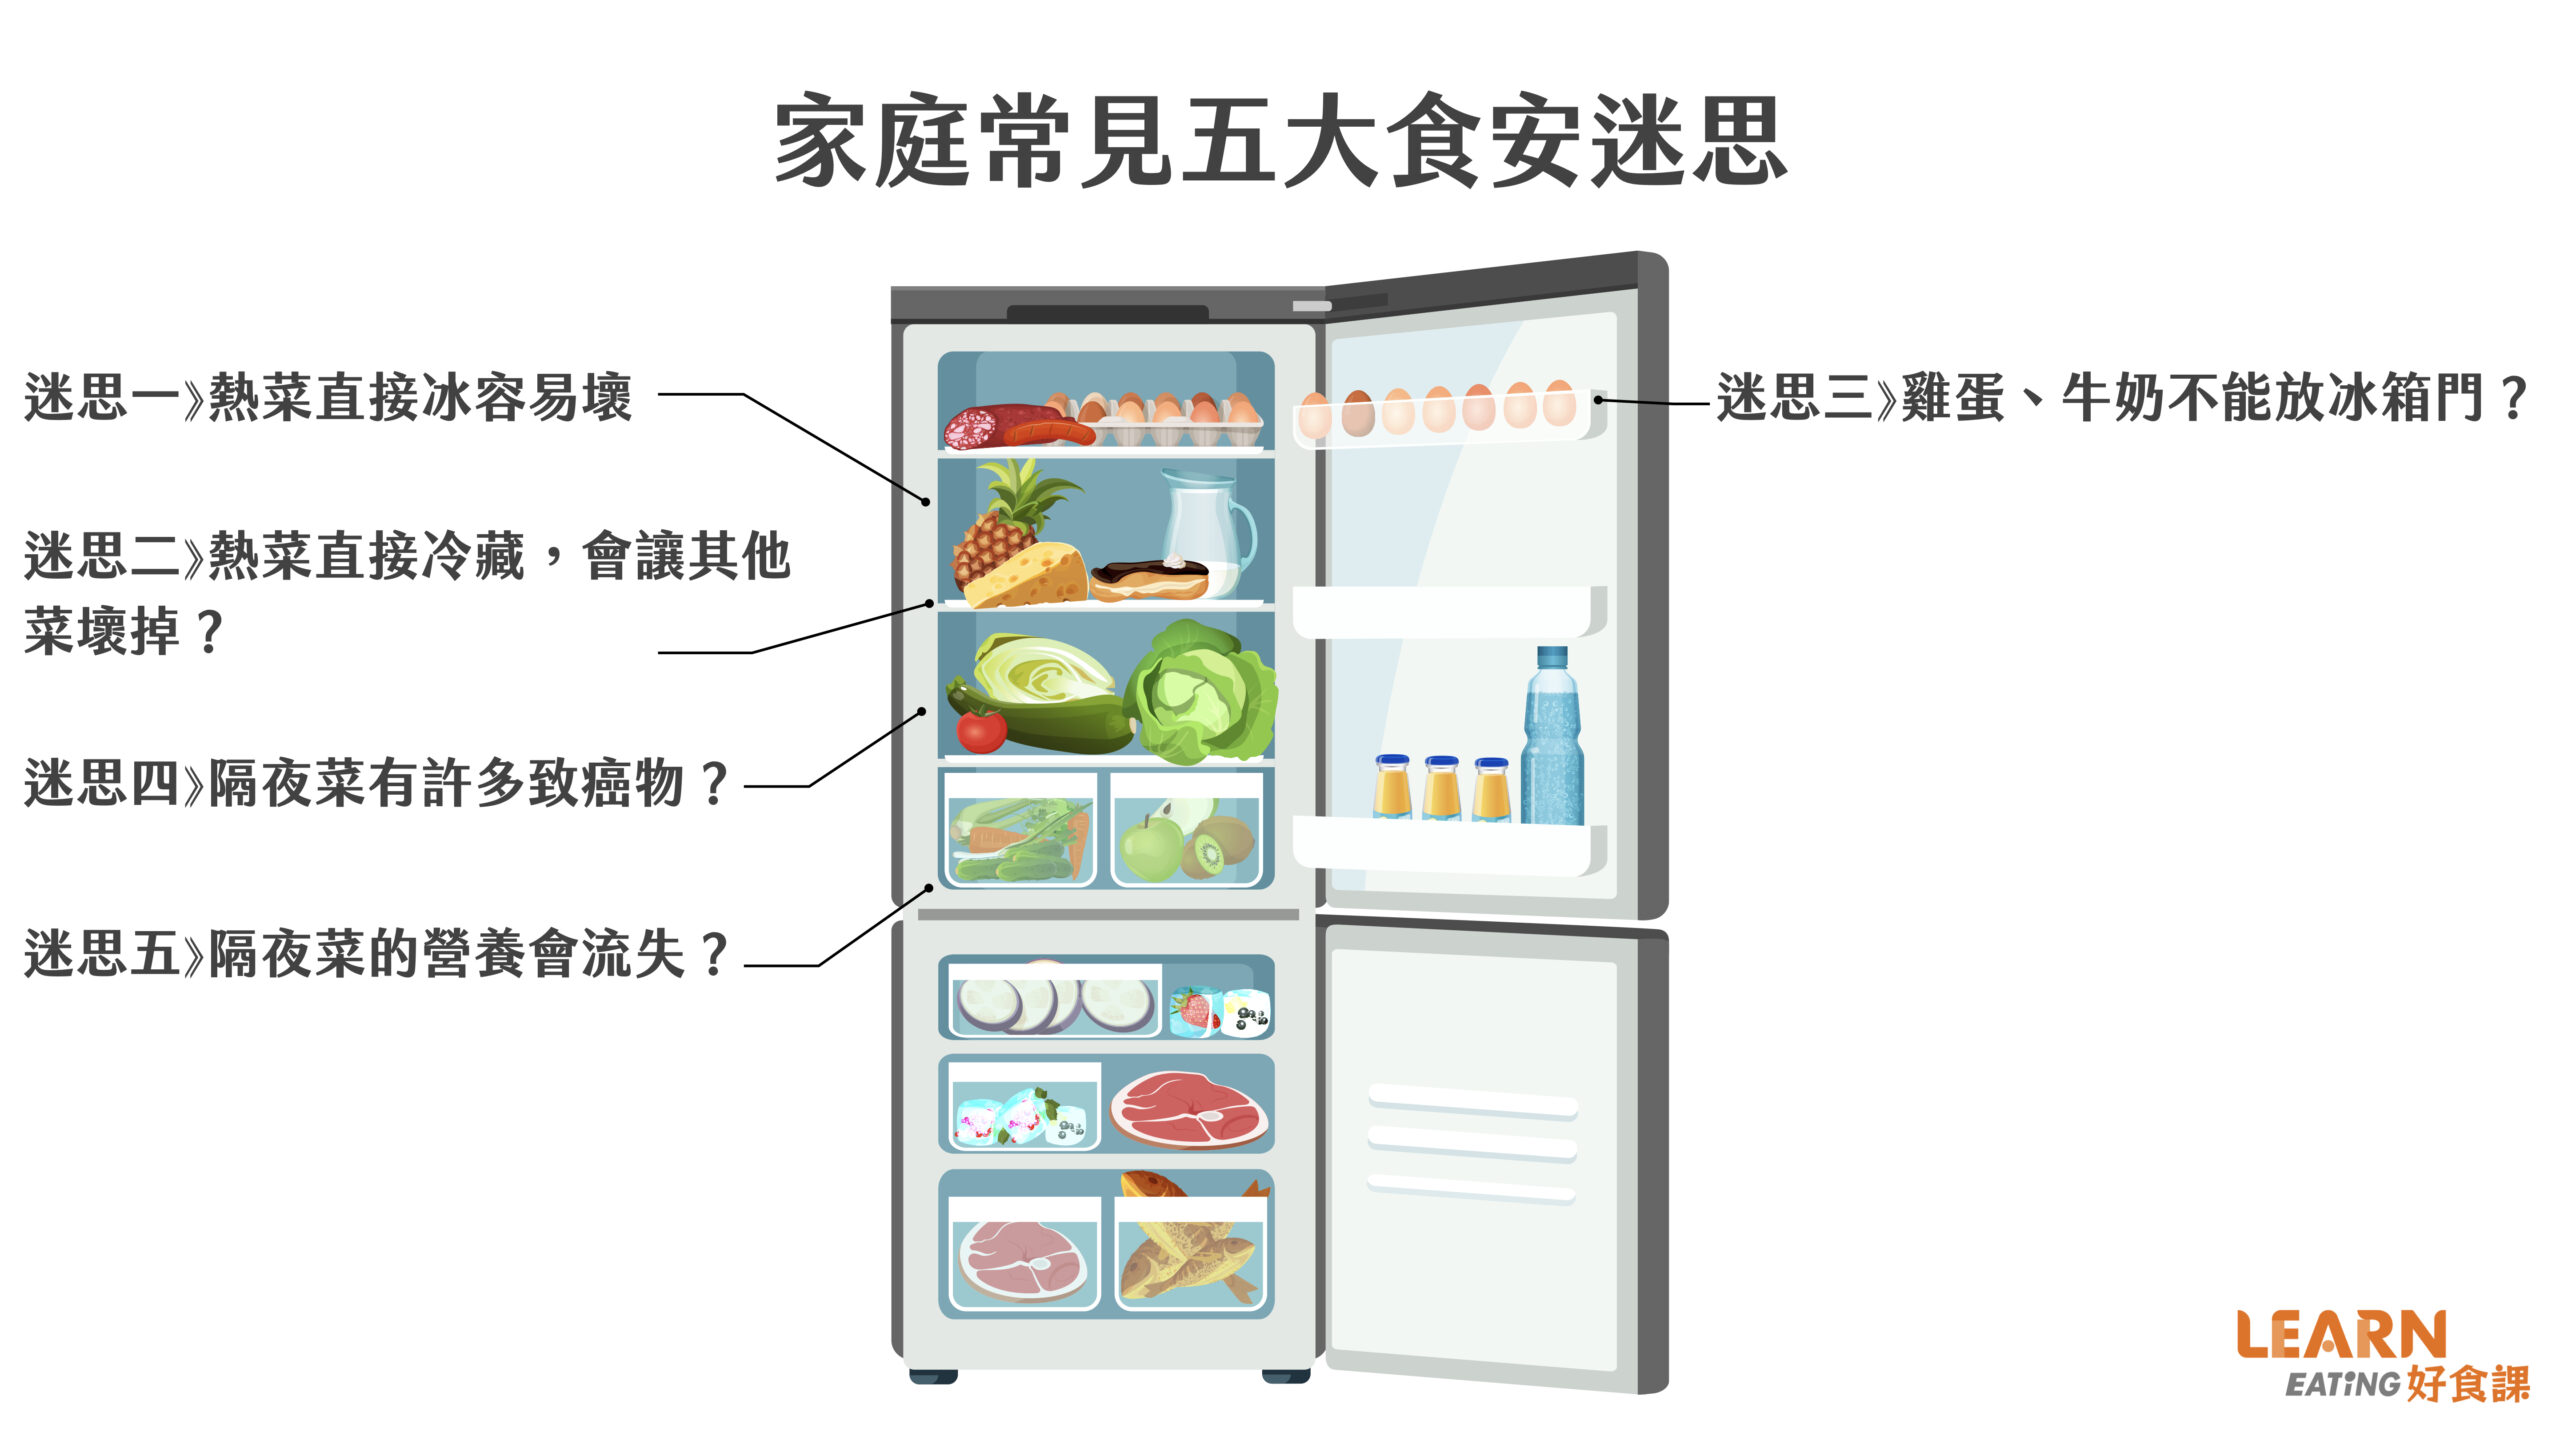 食安-冰箱-熱菜-直接冰-會壞嗎